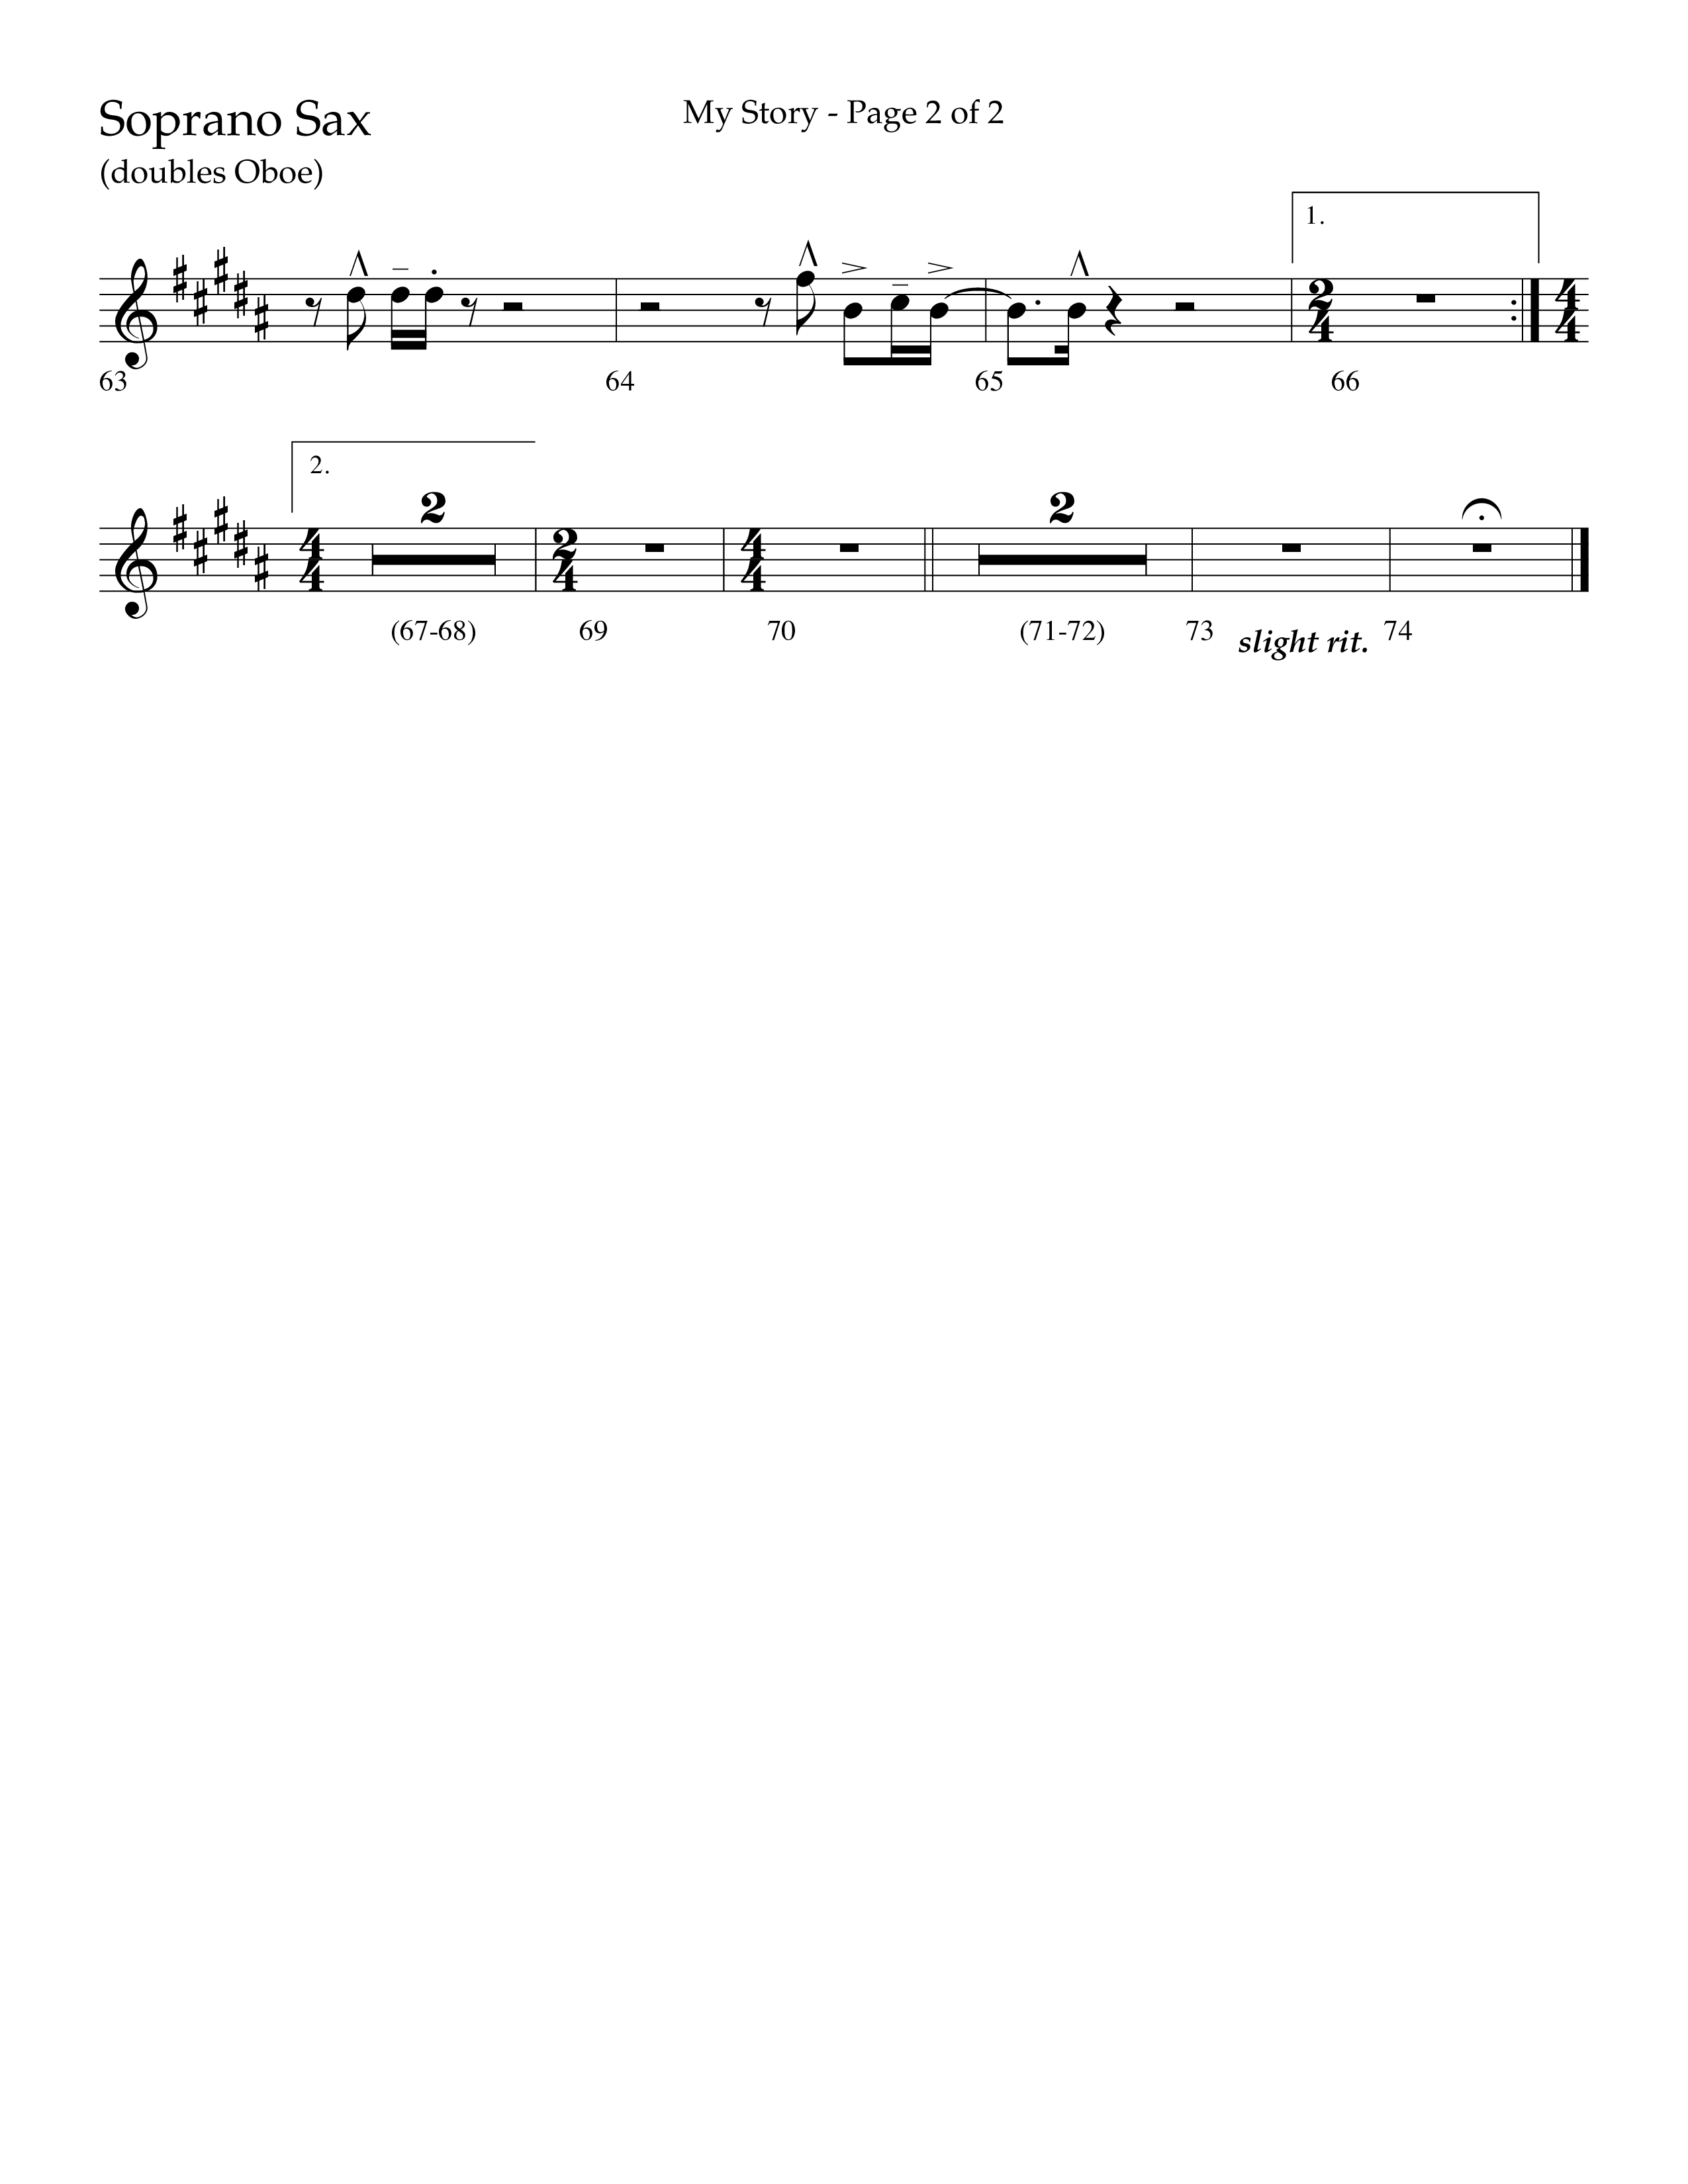 My Story (Choral Anthem SATB) Soprano Sax (Lifeway Choral / Arr. Craig Adams)